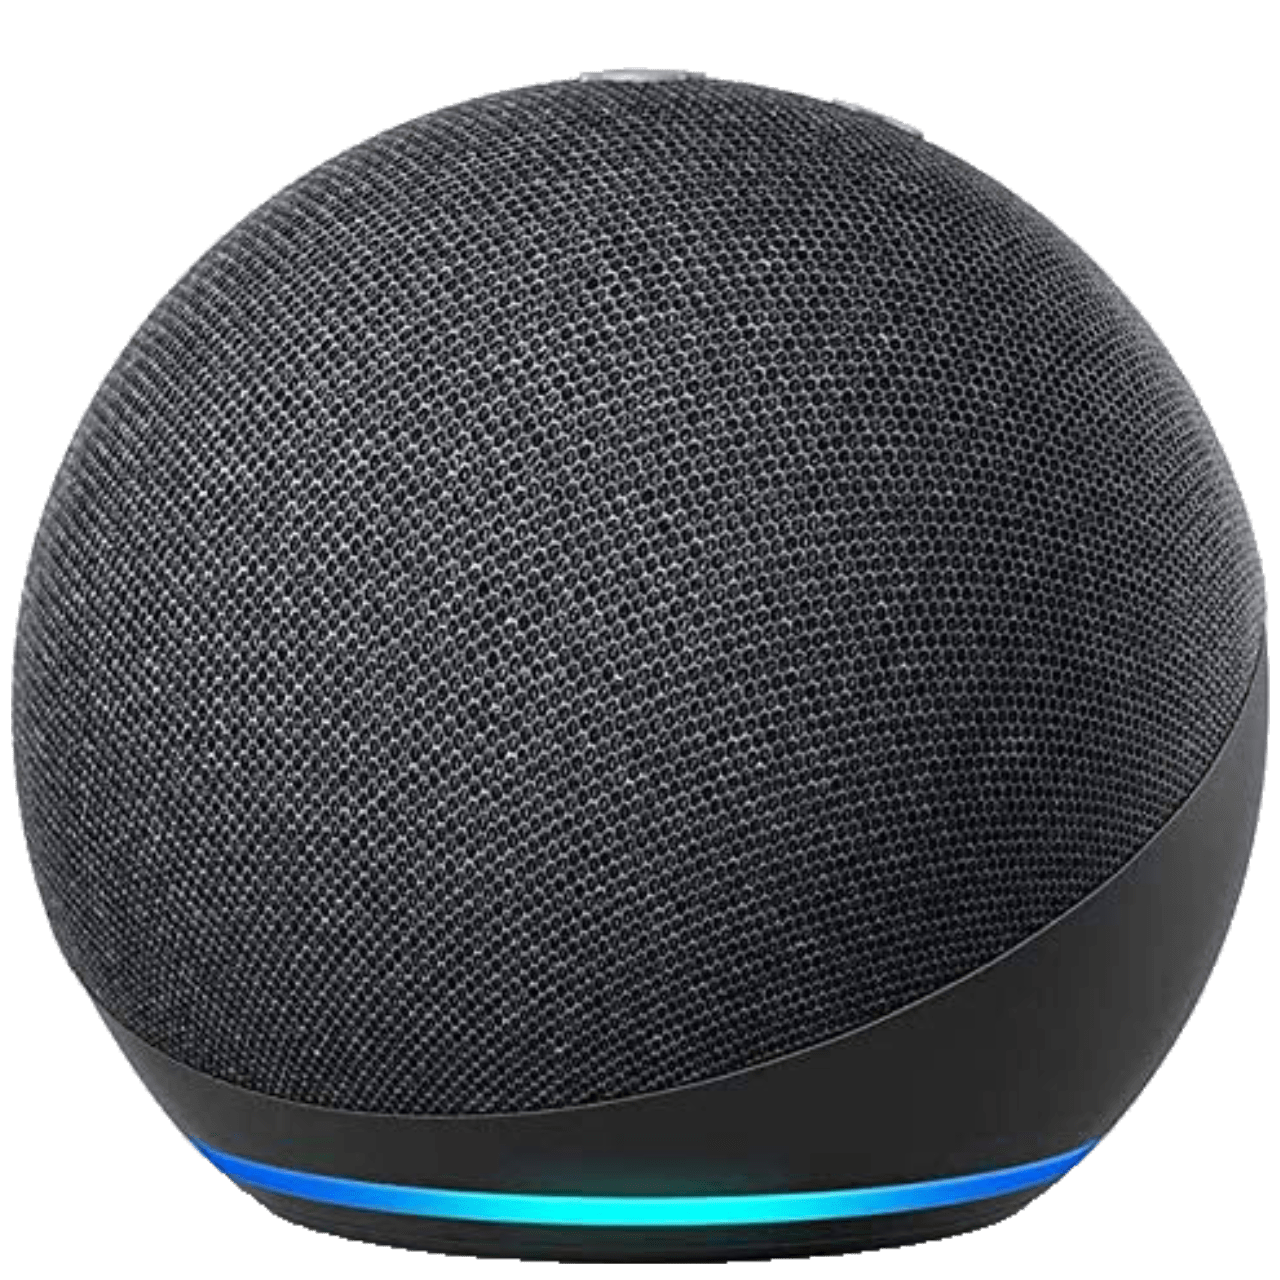 Amazon Echo Dot 2020